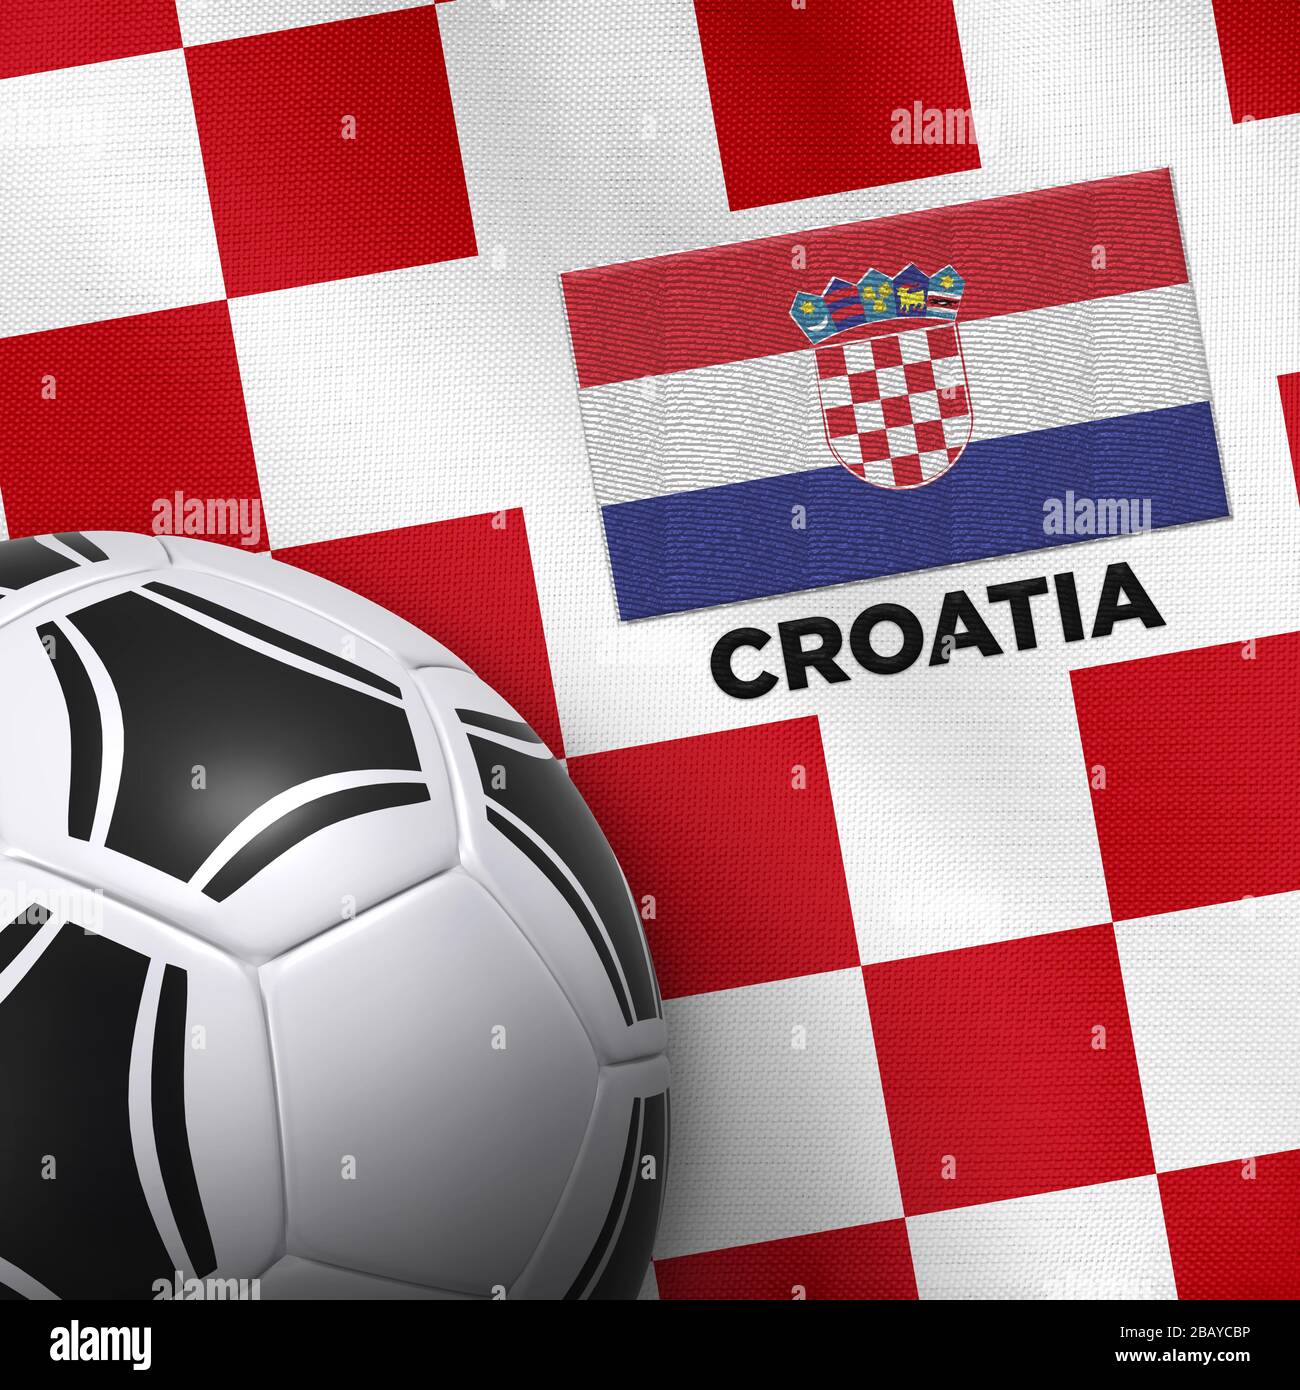 Fanartikel Fußball Fan Artikel EM WM Sport Flagg Armband Croatia Kroatien